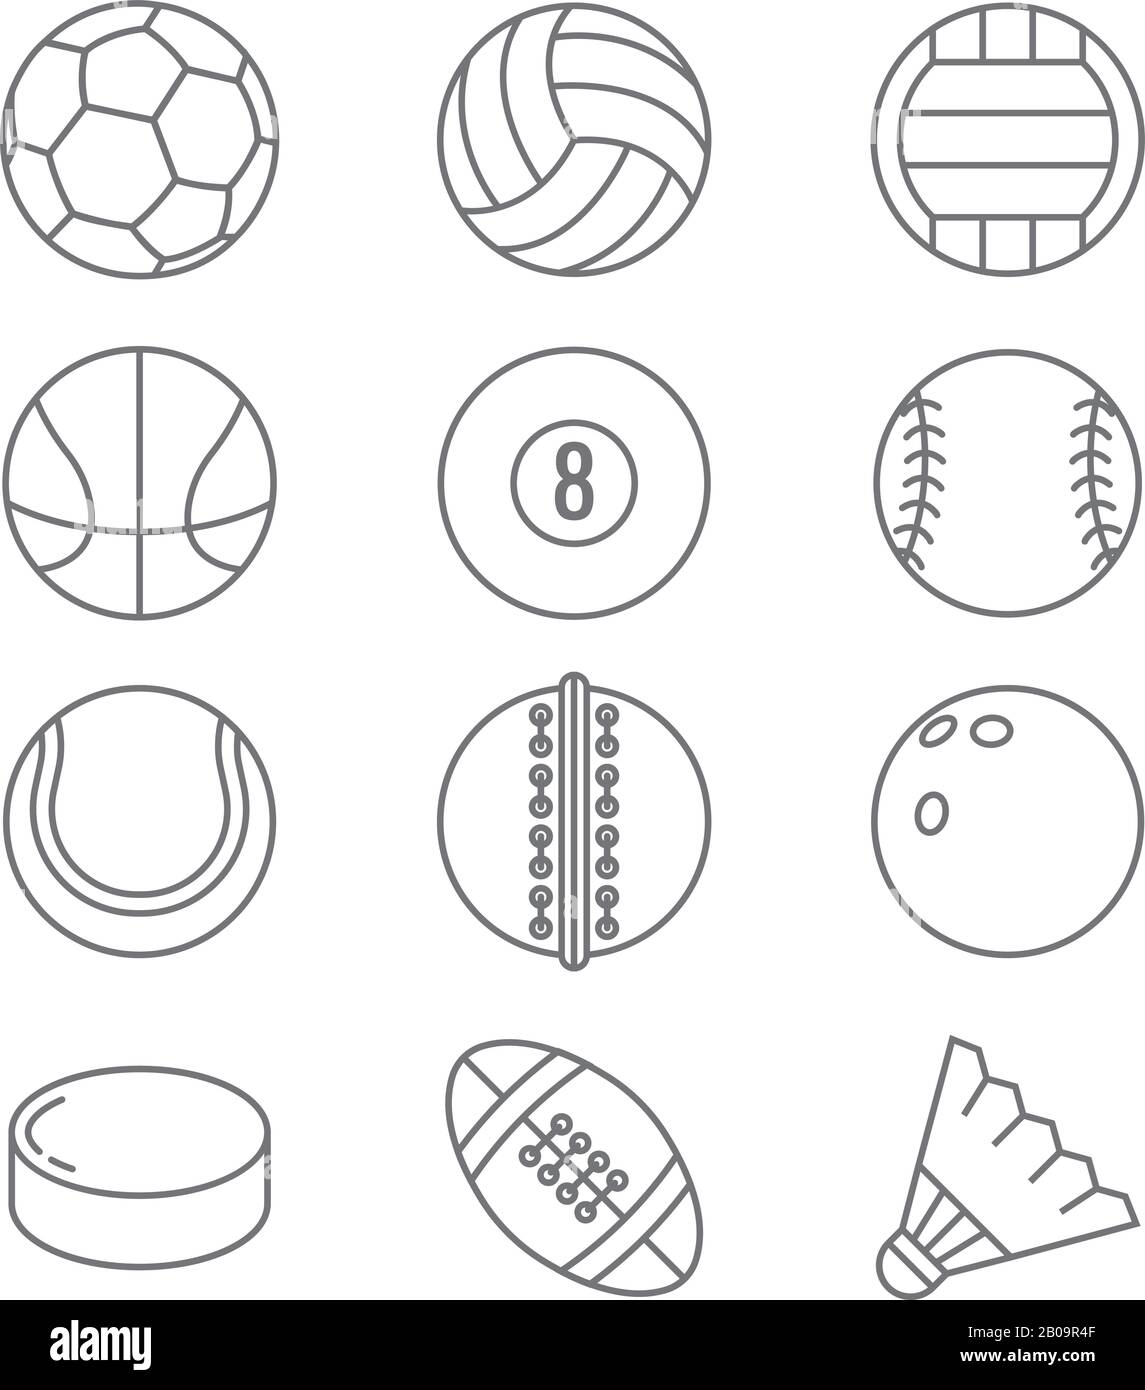 Les balles de sport vectorisez des icônes de ligne fine. Basket-ball et football, tennis et football, baseball ou bowling, golf et balles de volley-ball illustration Illustration de Vecteur